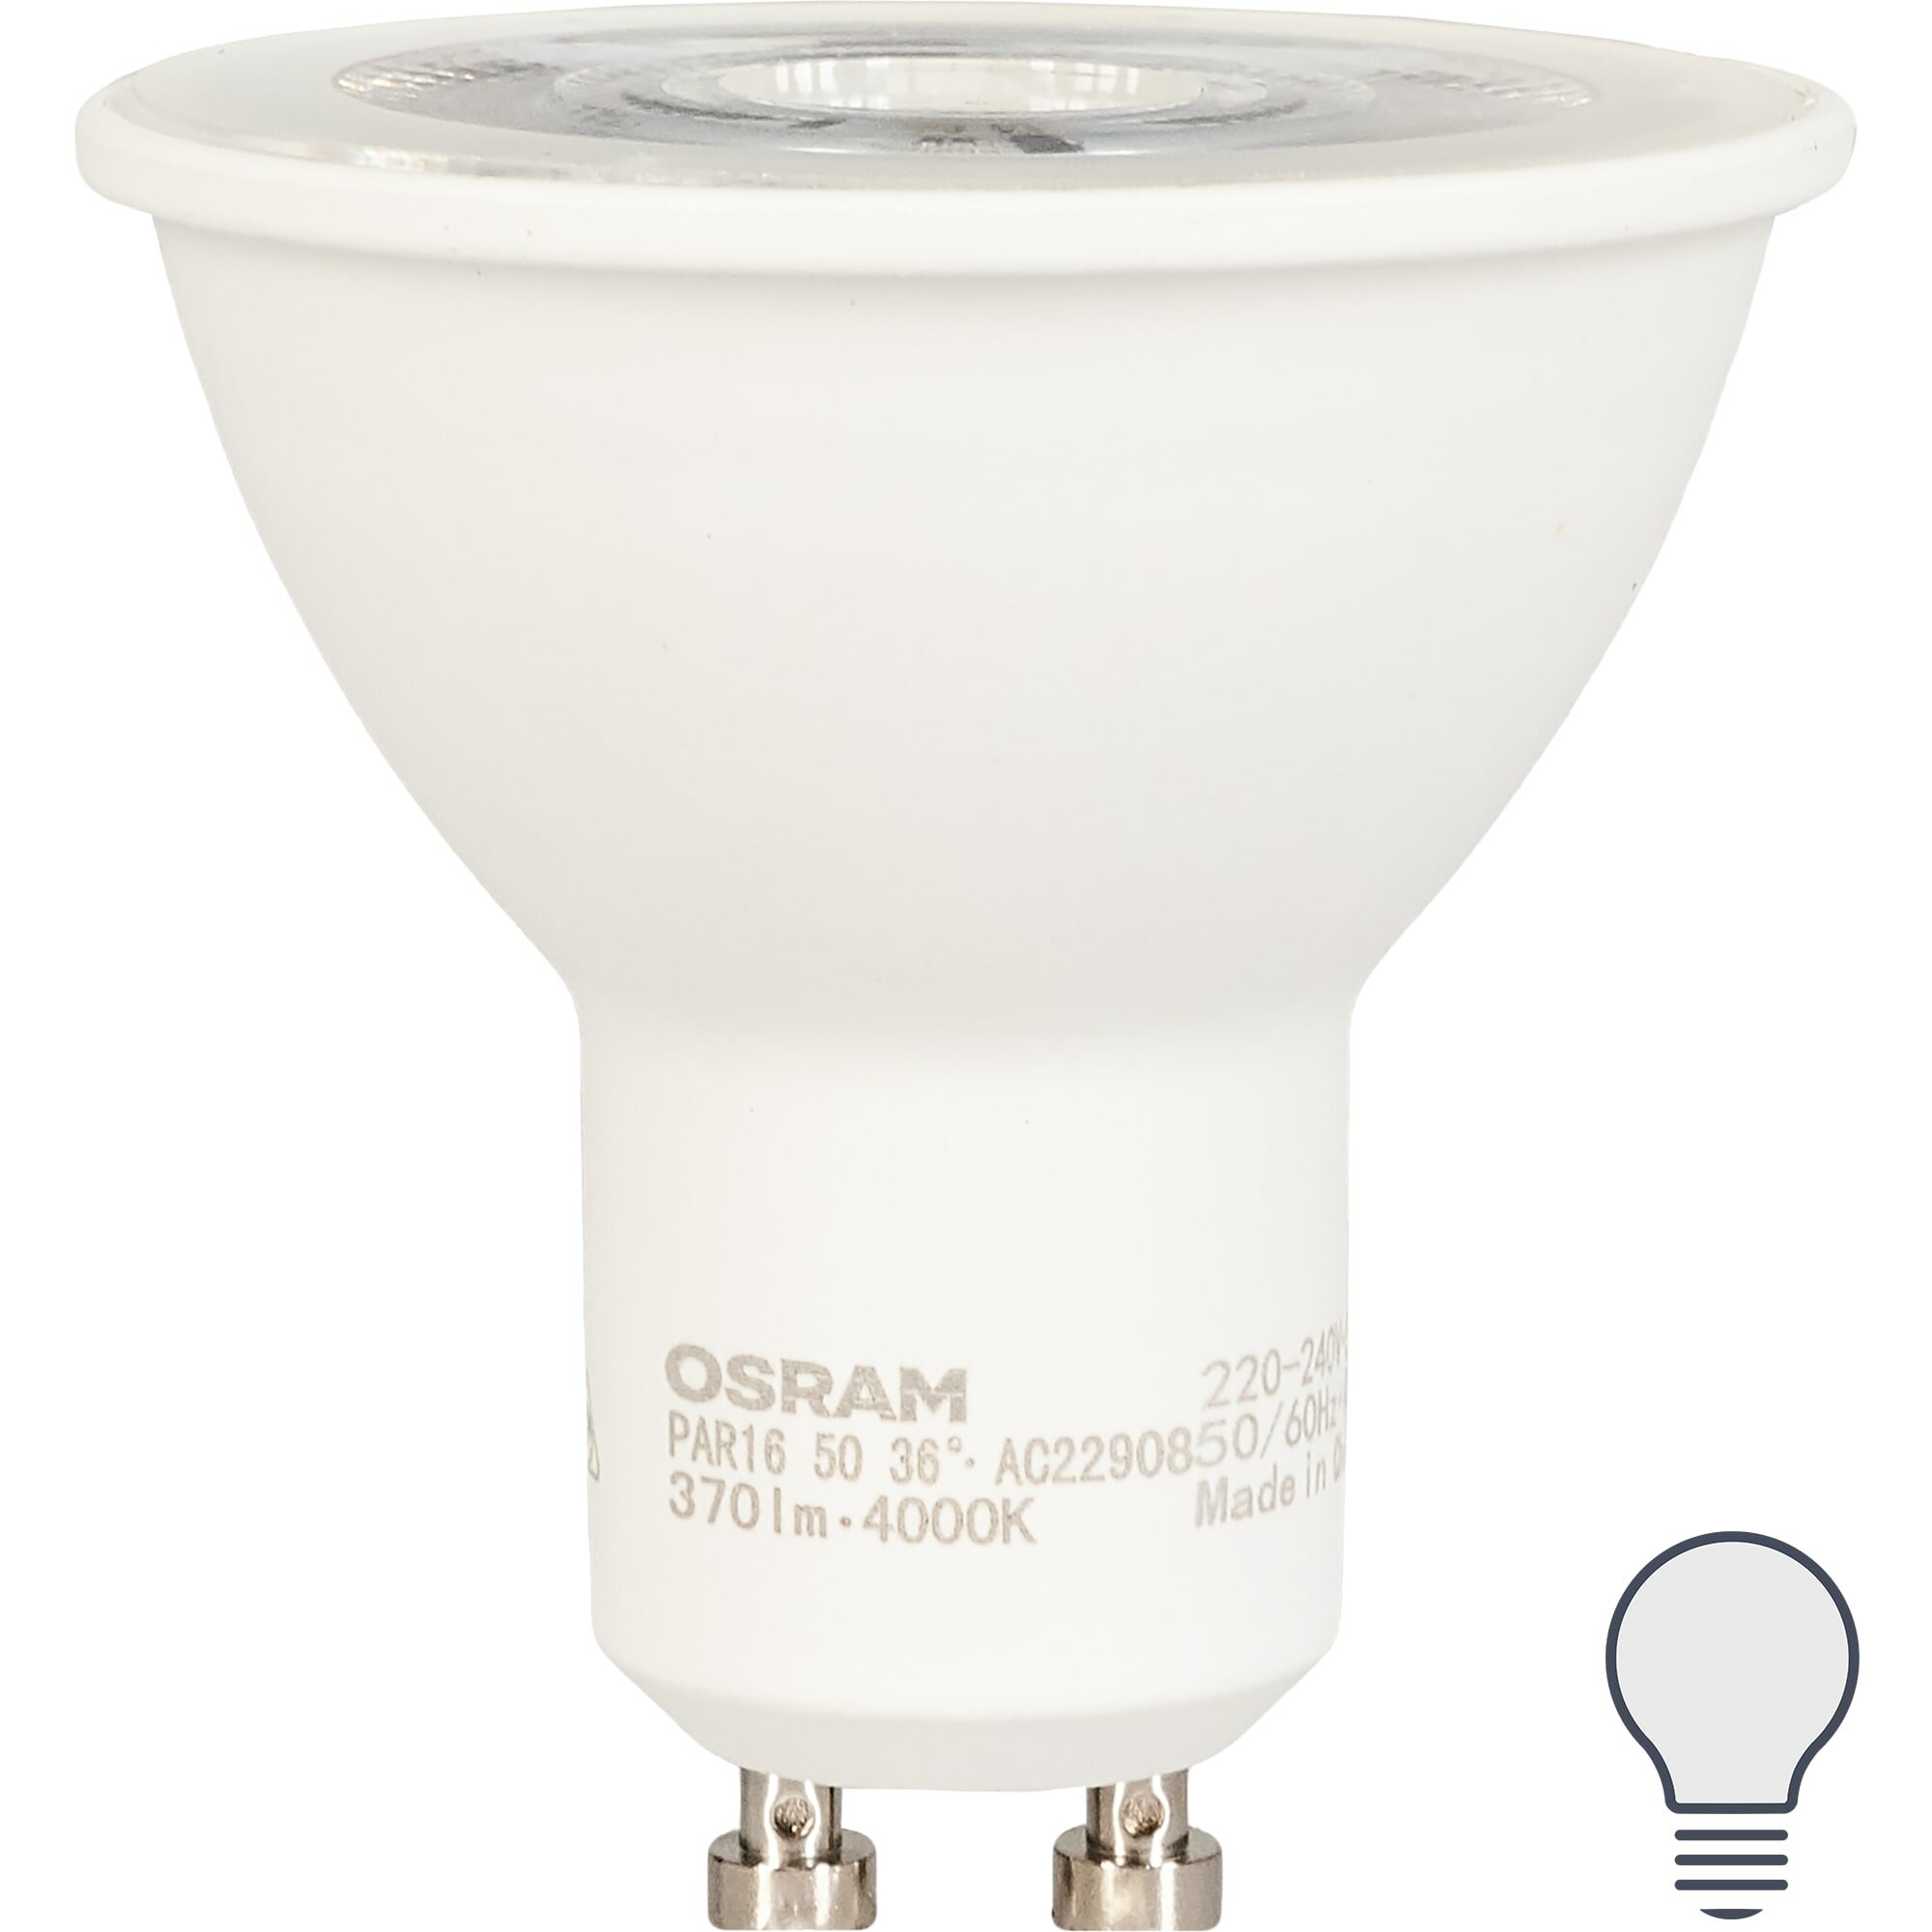 Лампа светодиодная Osram GU10 5 Вт спот прозрачная 370 лм нейтральный белый свет. Набор из 2 шт.